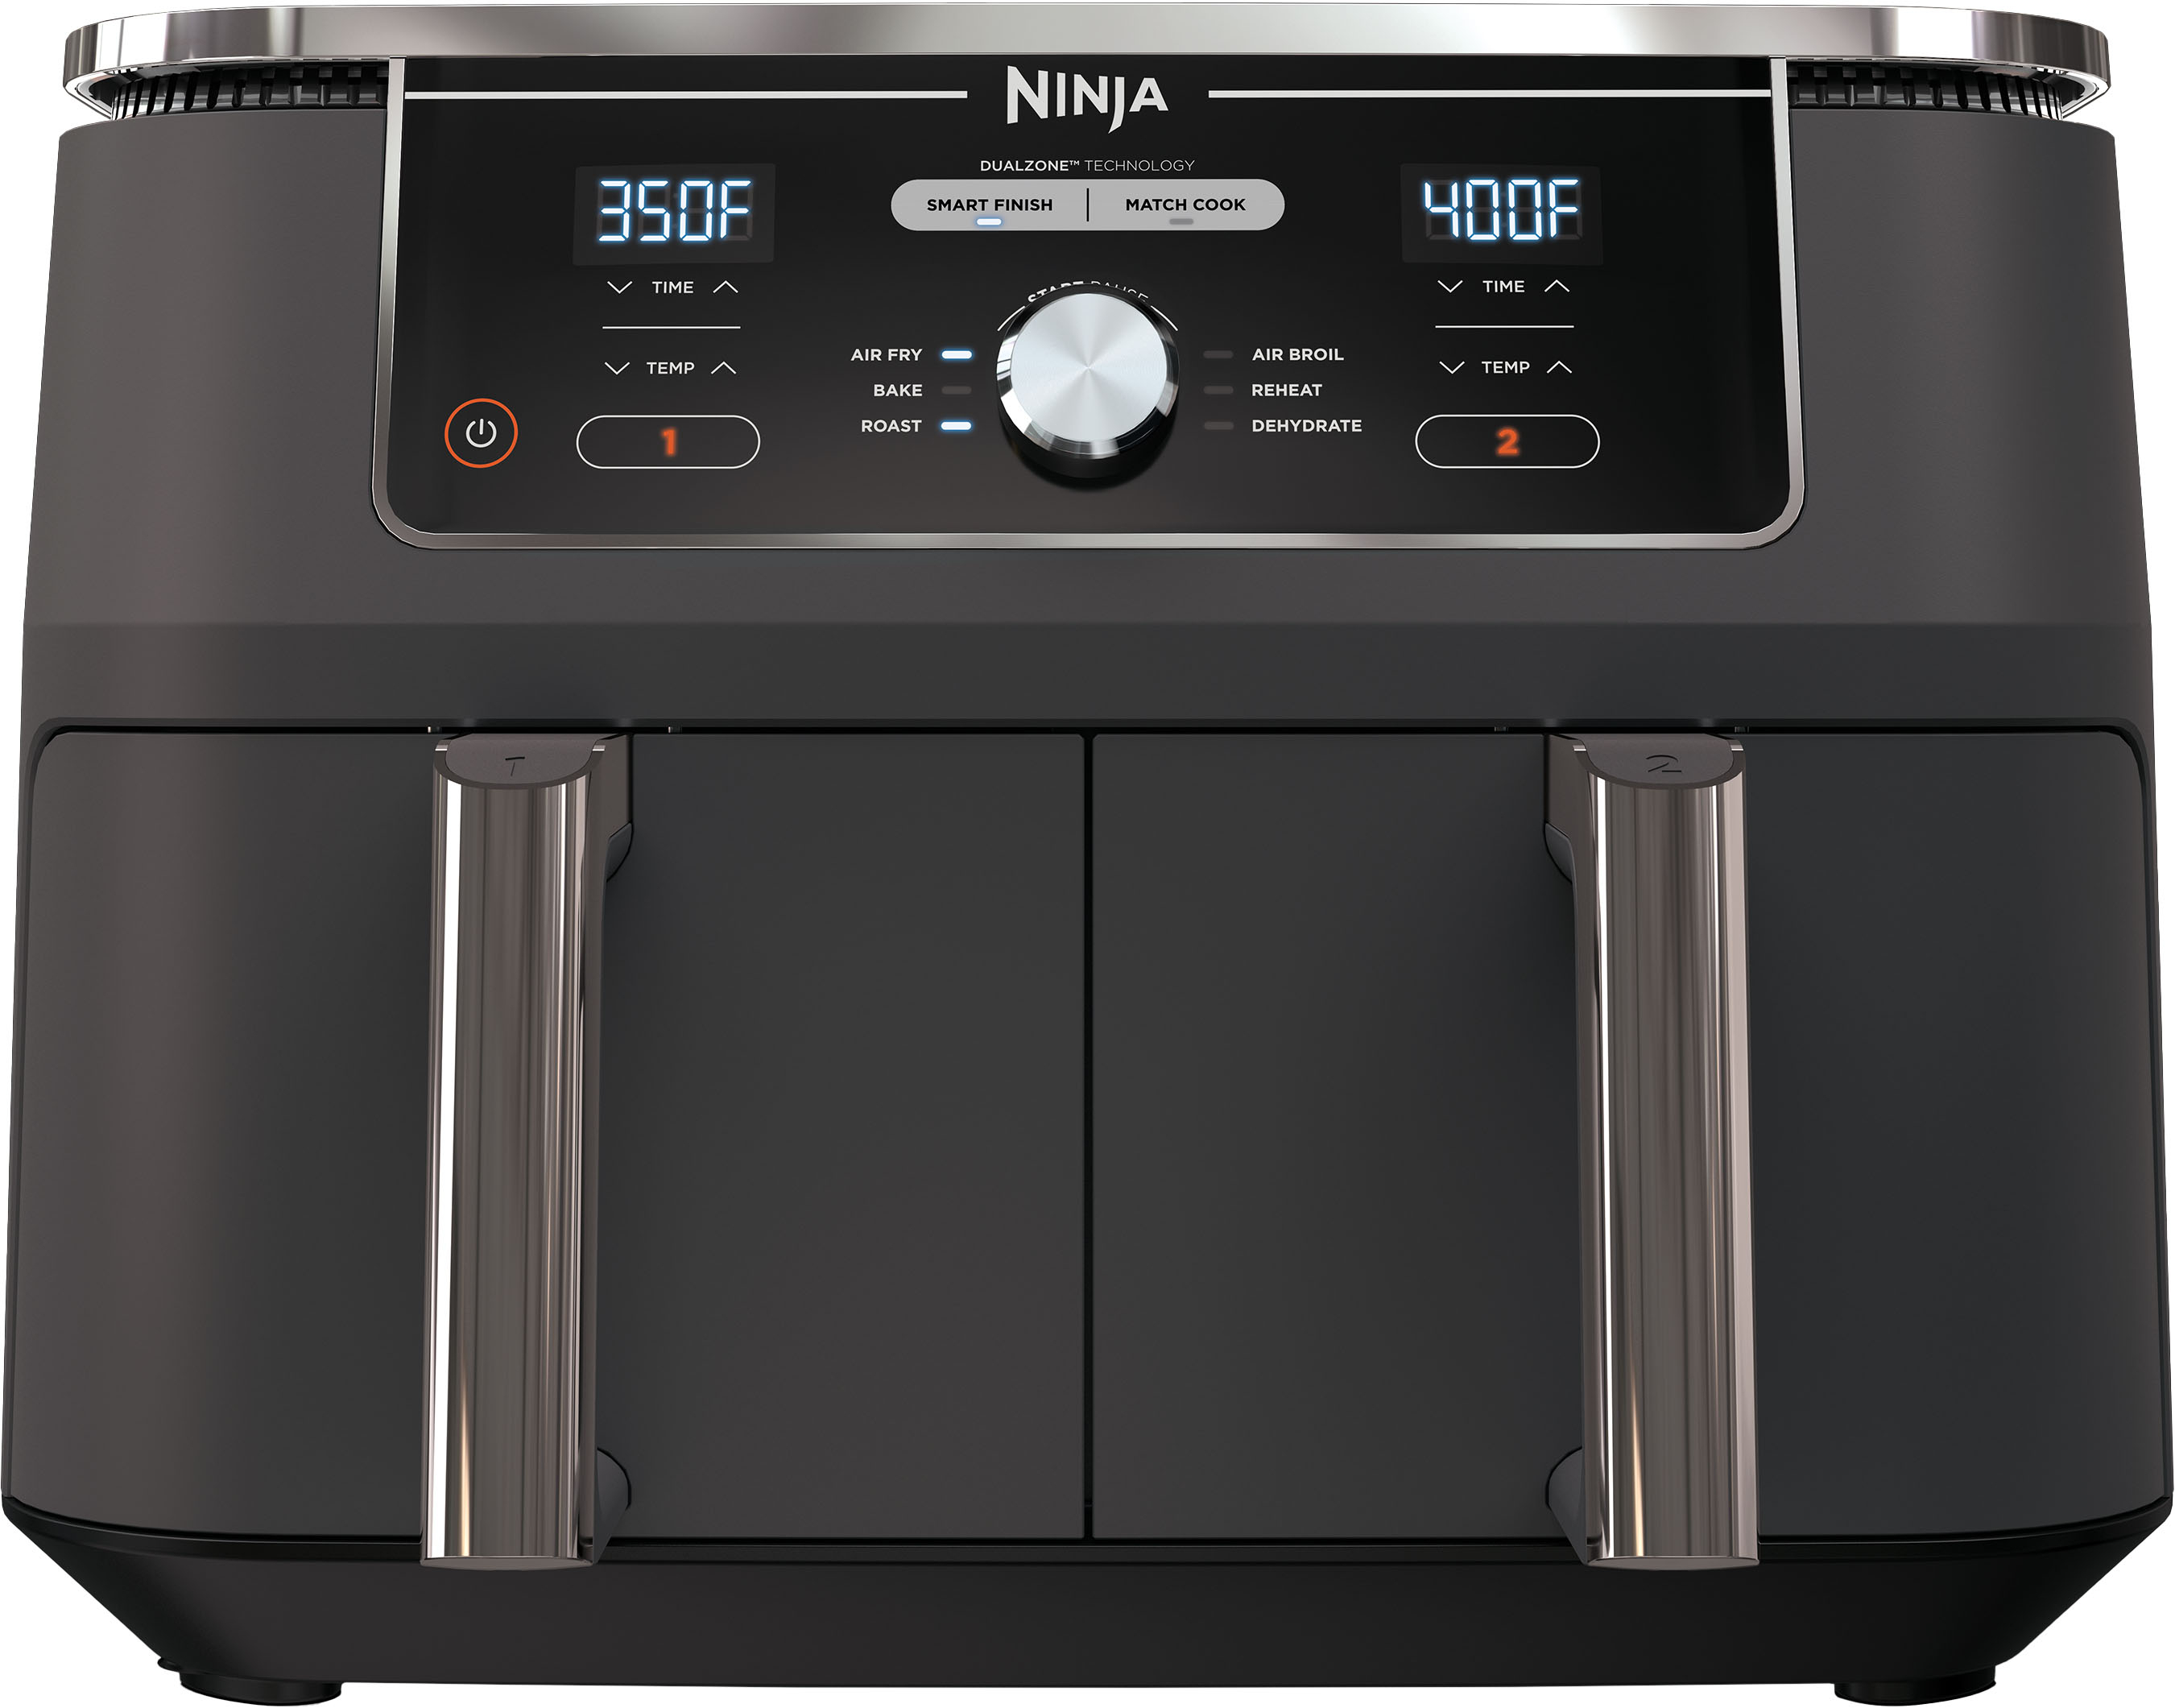 Ninja Foodi Dual-Basket Air Fryer Review - CNET